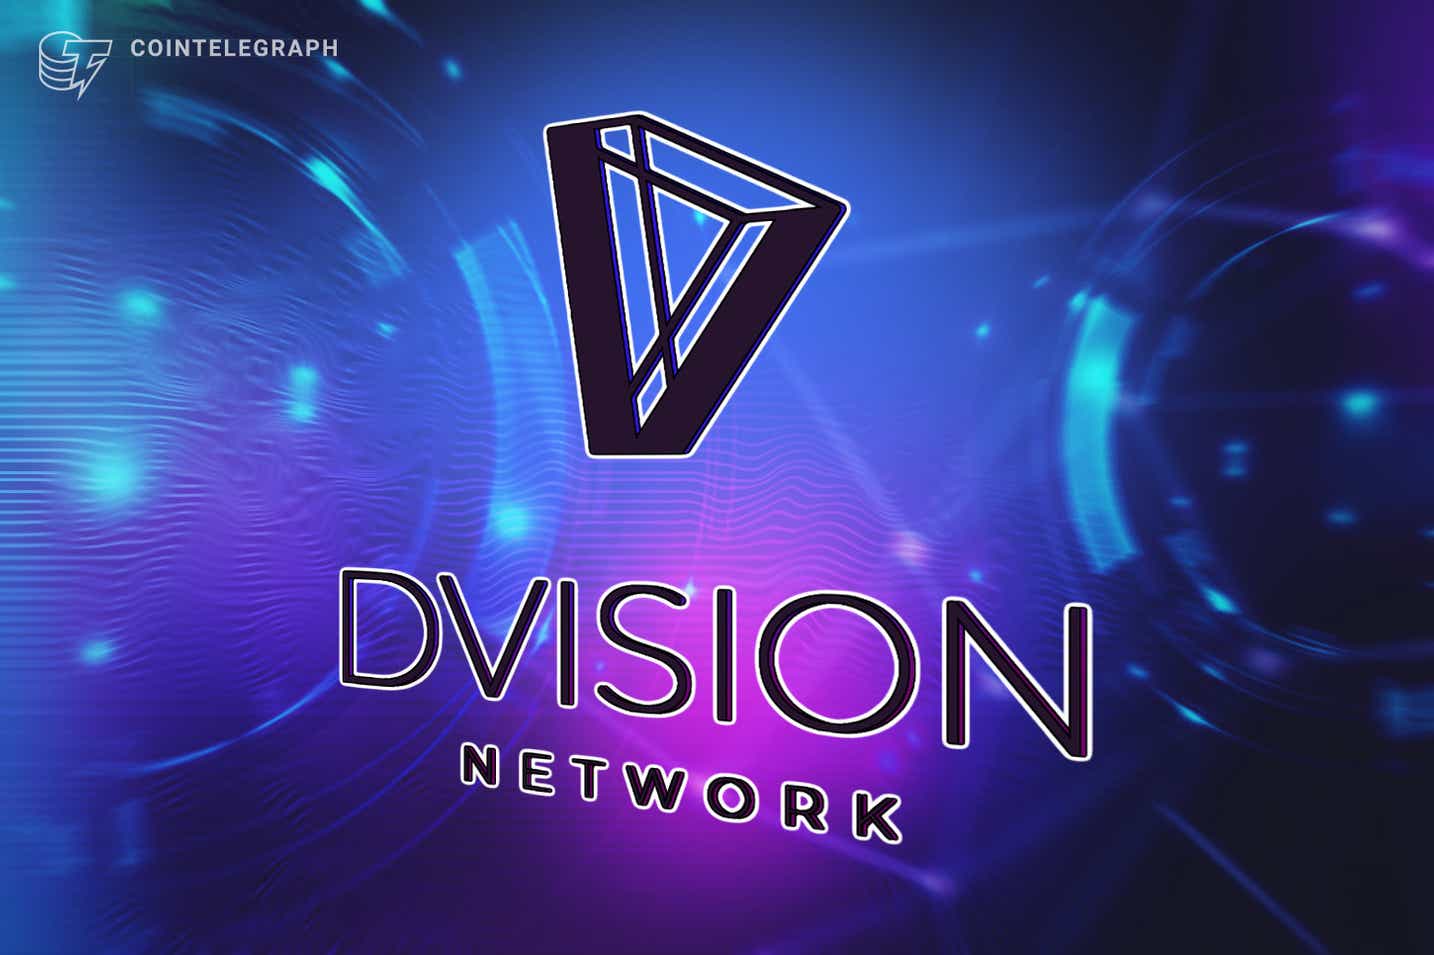 Dvision Network đã chính thức công bố đợt bán LAND đầu tiên với sự hợp tác của Binance NFT và NFTb vào ngày 24 tháng 11